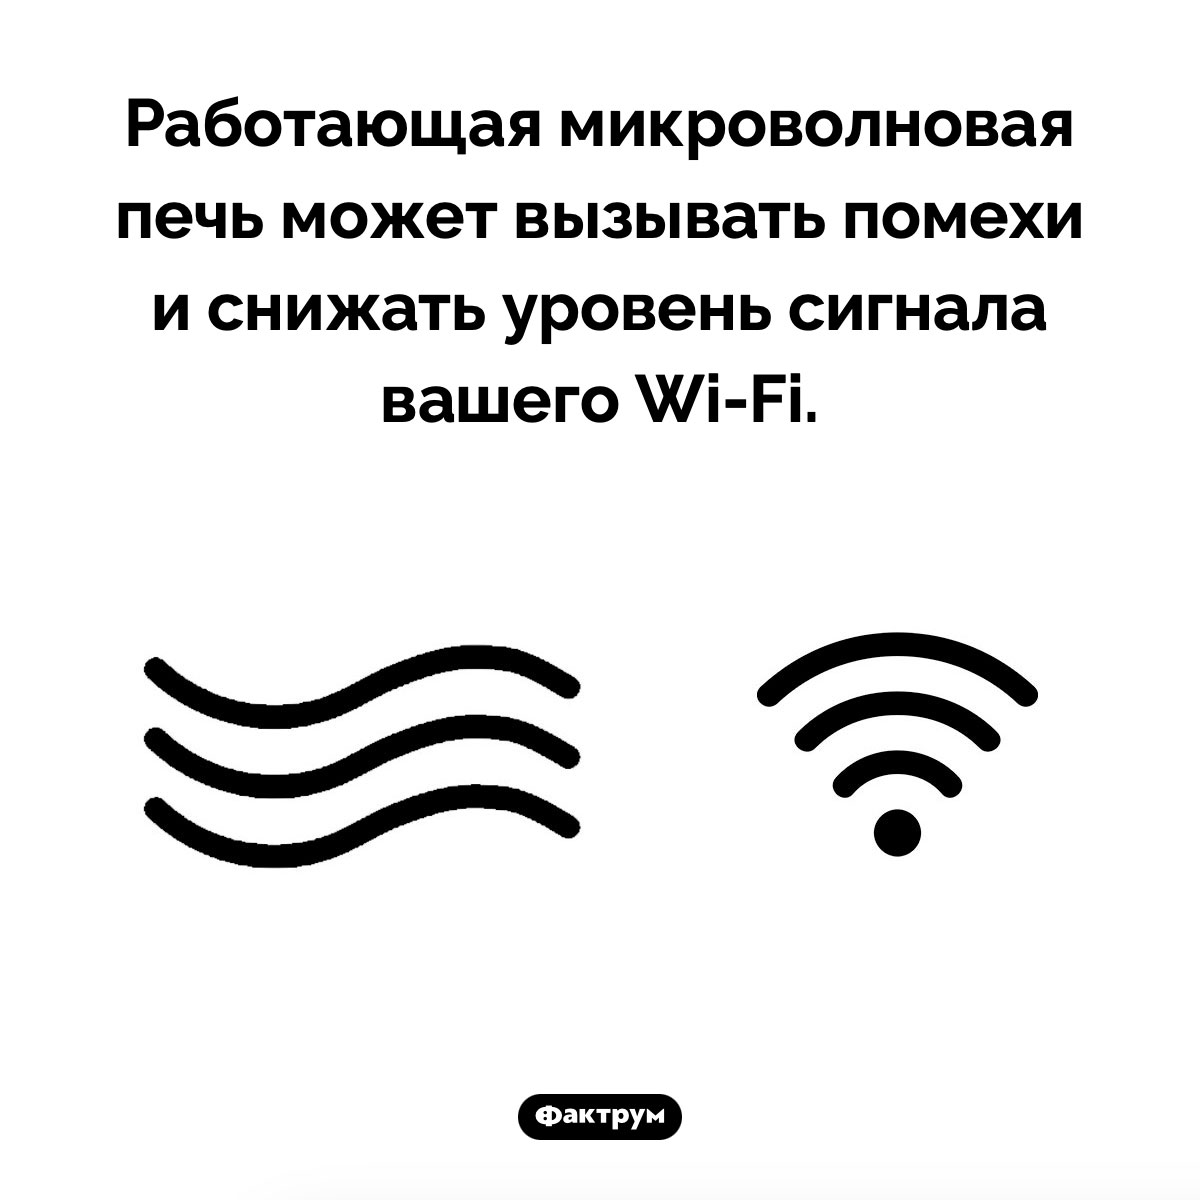 Влияние микроволновки на Wi-Fi. Работающая микроволновая печь может вызывать помехи и снижать уровень сигнала вашего Wi-Fi.